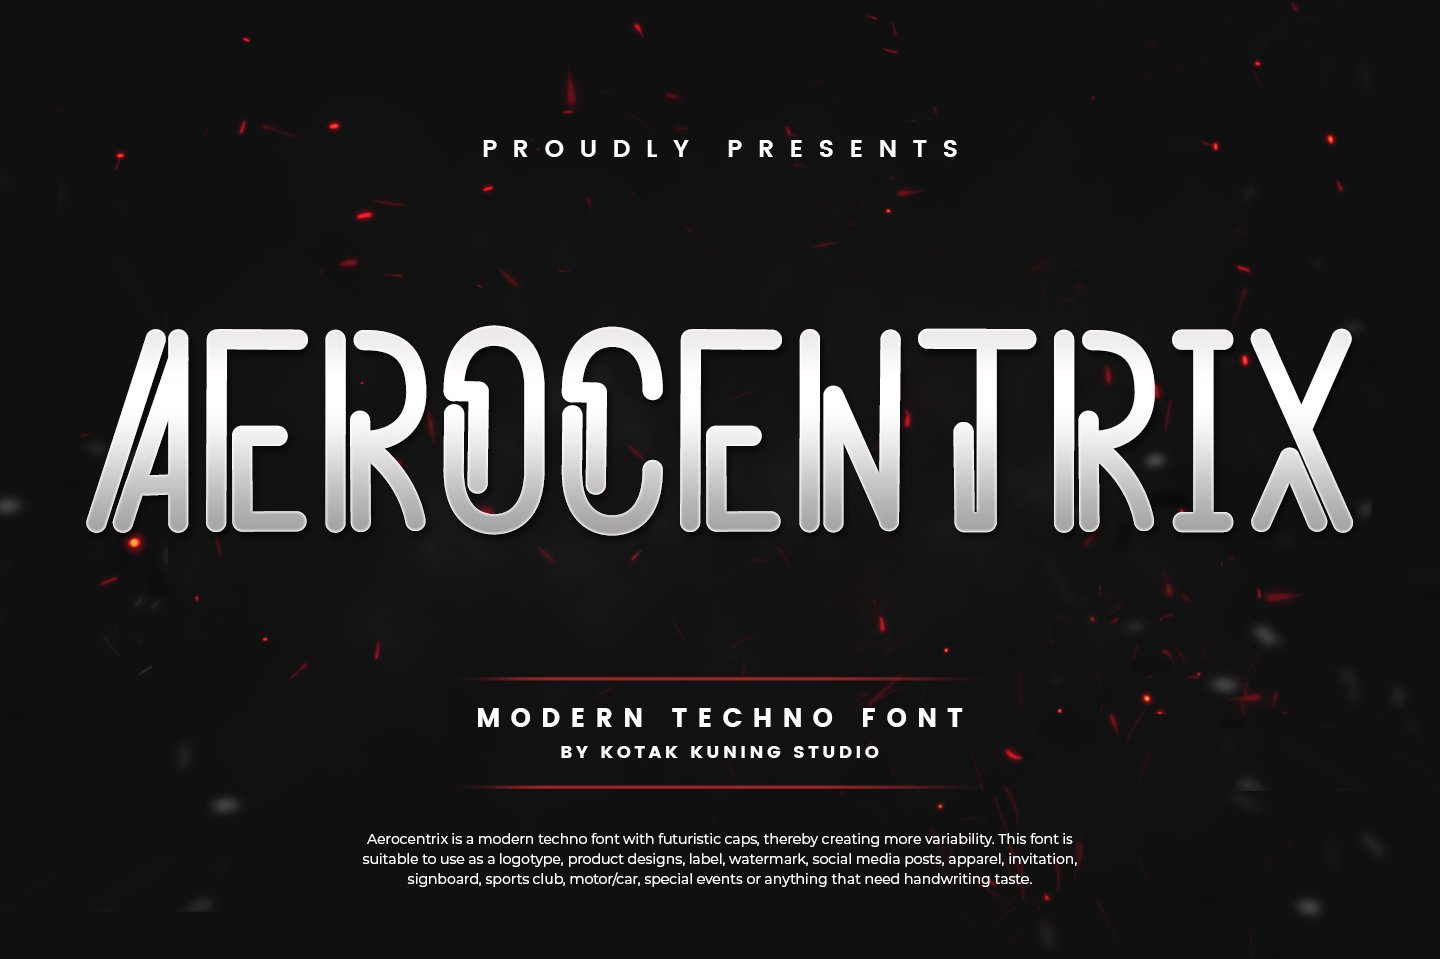 Aerocentrix - Techno Font cover image.